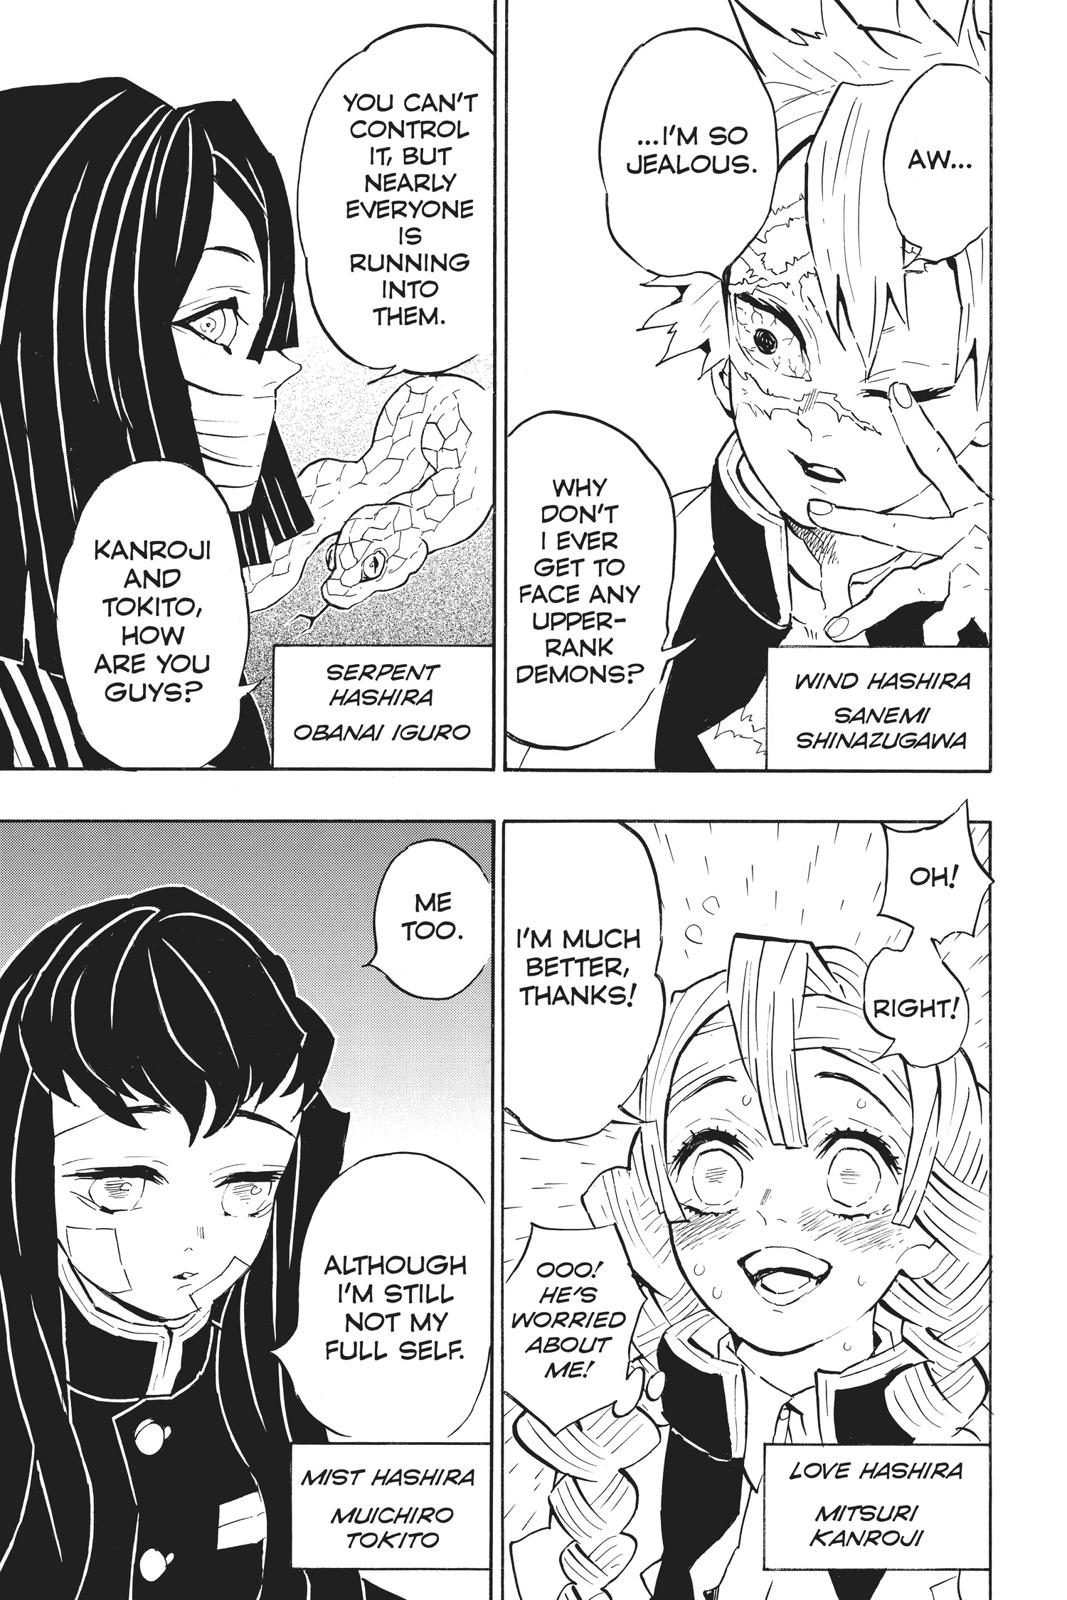 Demon Slayer Manga Manga Chapter - 128 - image 7